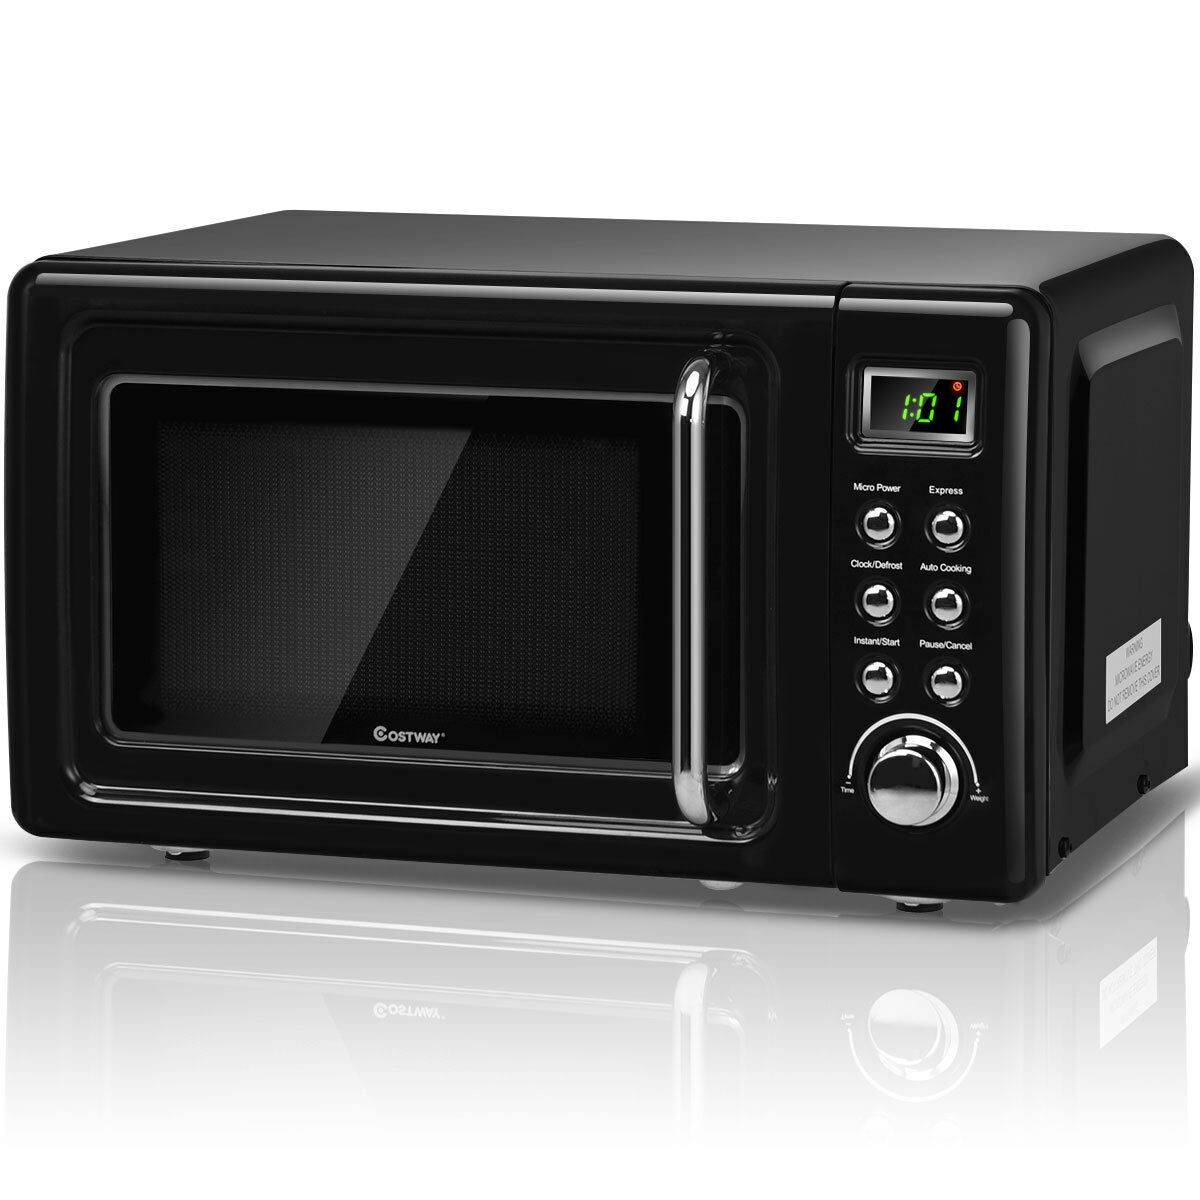 Costway Retro Countertop Microwave Oven 0 7cu Ft 700 Watt Cold